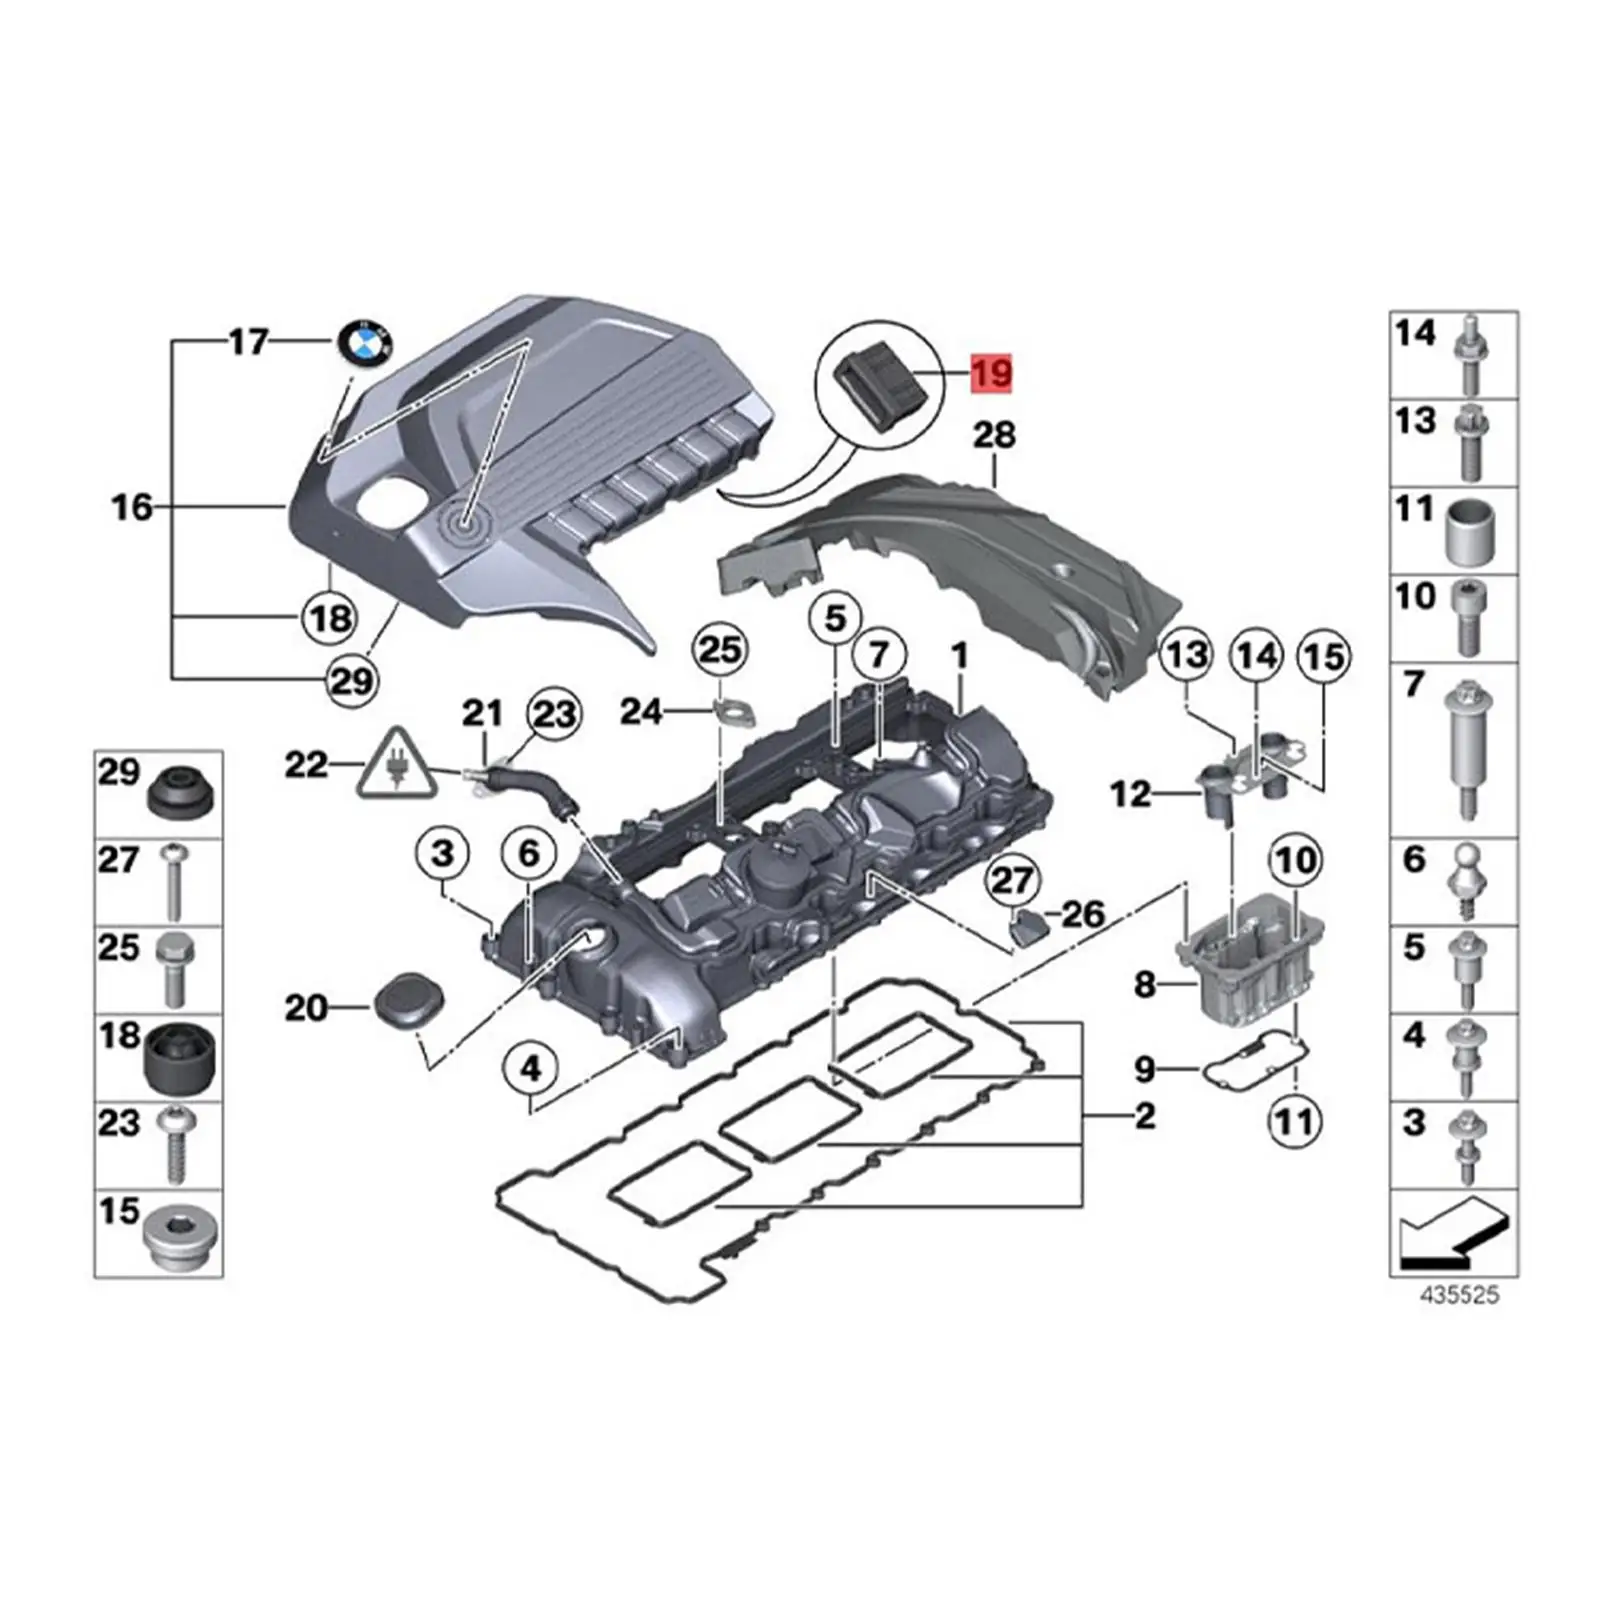 Upper Radiator Mount Parts Replacement Repair Parts 17111712911 for BMW E32 735i E38 740i E34 530i E38 750il E32 750il